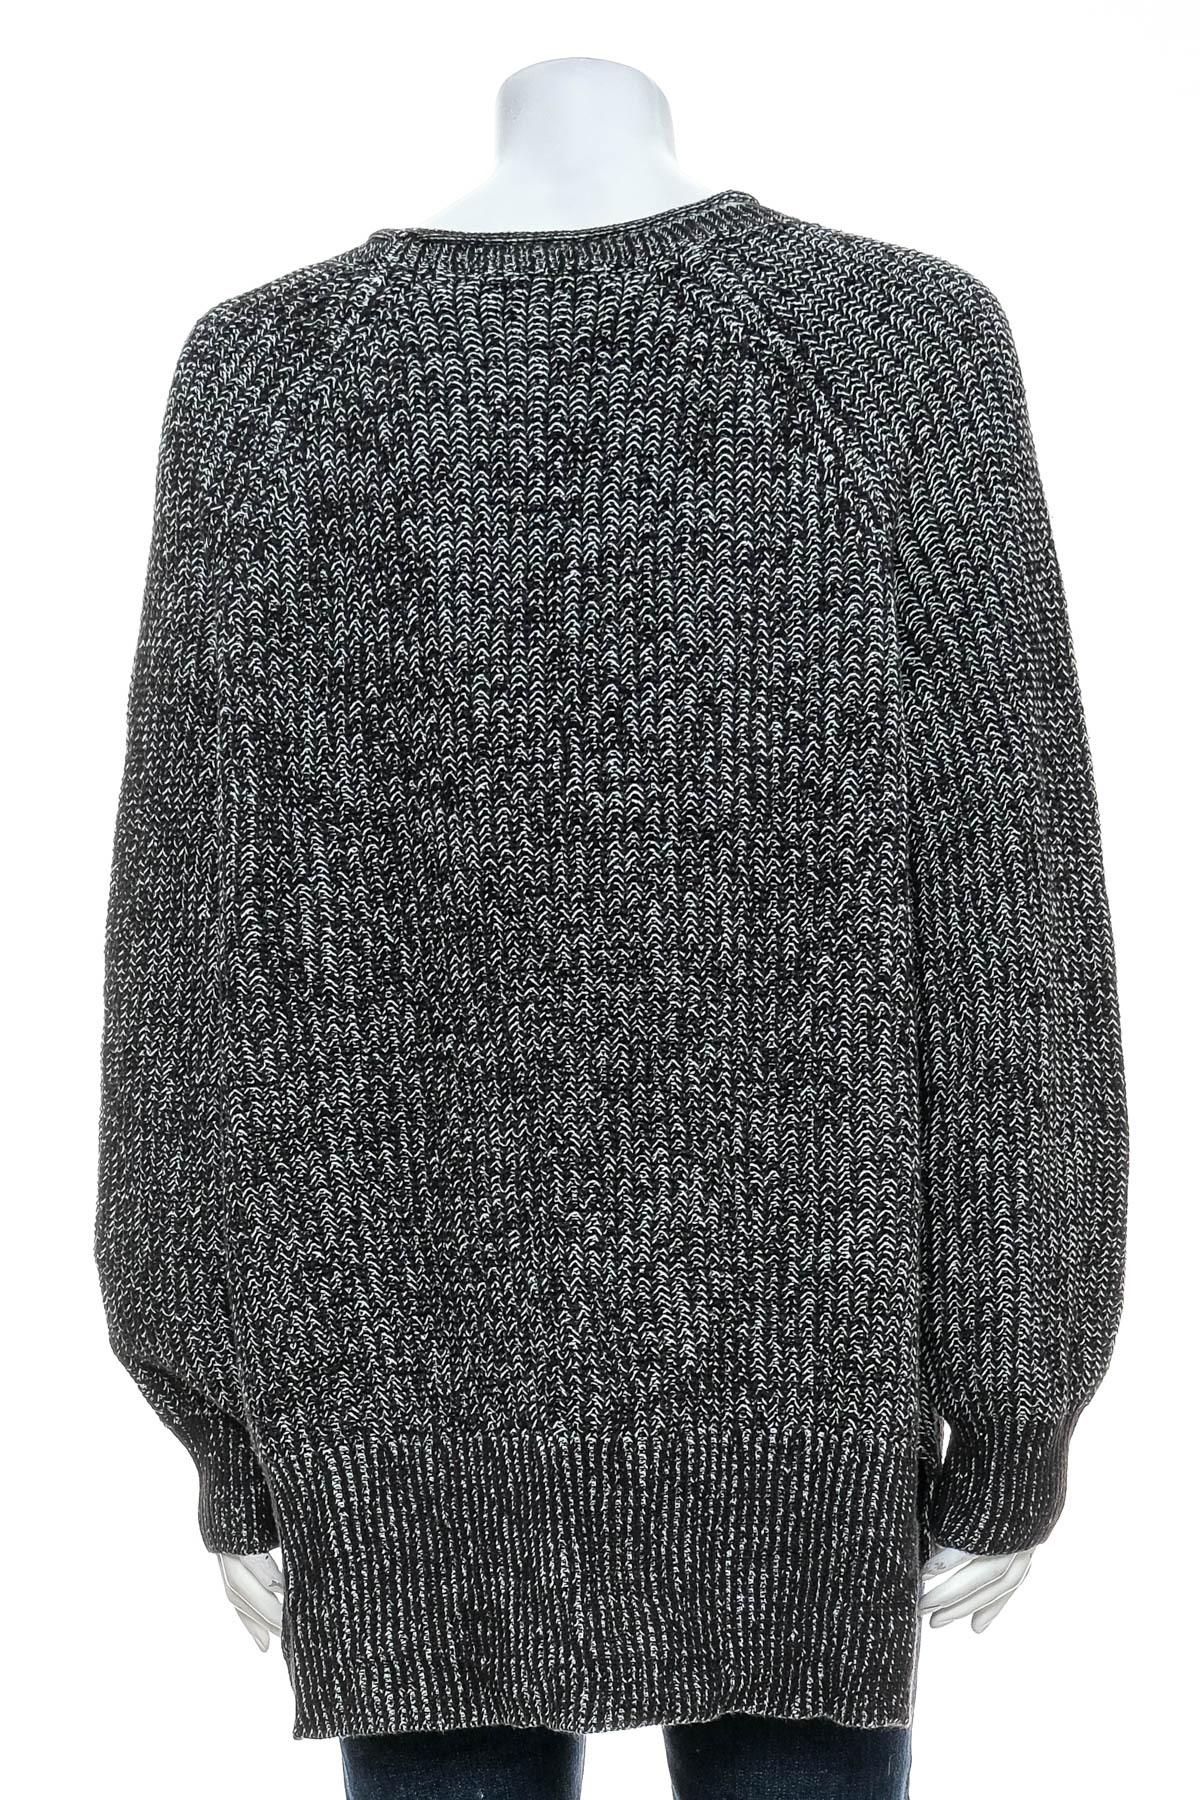 Women's sweater - ELLEN TRACY - 1